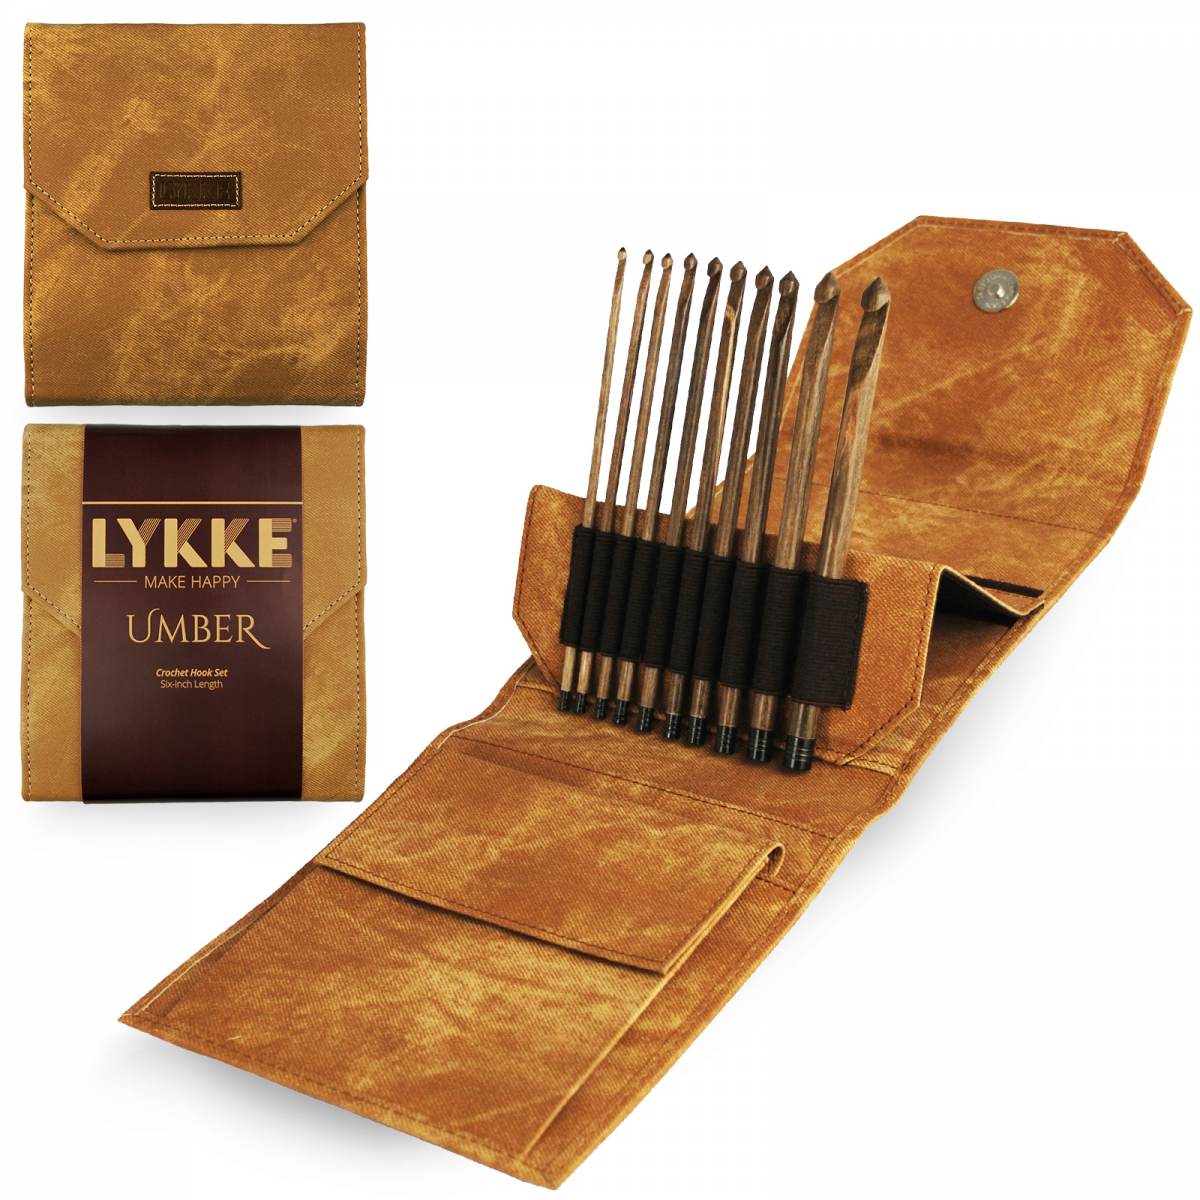 LYKKECRAFTS Lykke Driftwood 6 CROCHET HOOK 8 mm L - HeartStrings Yarn  Studio